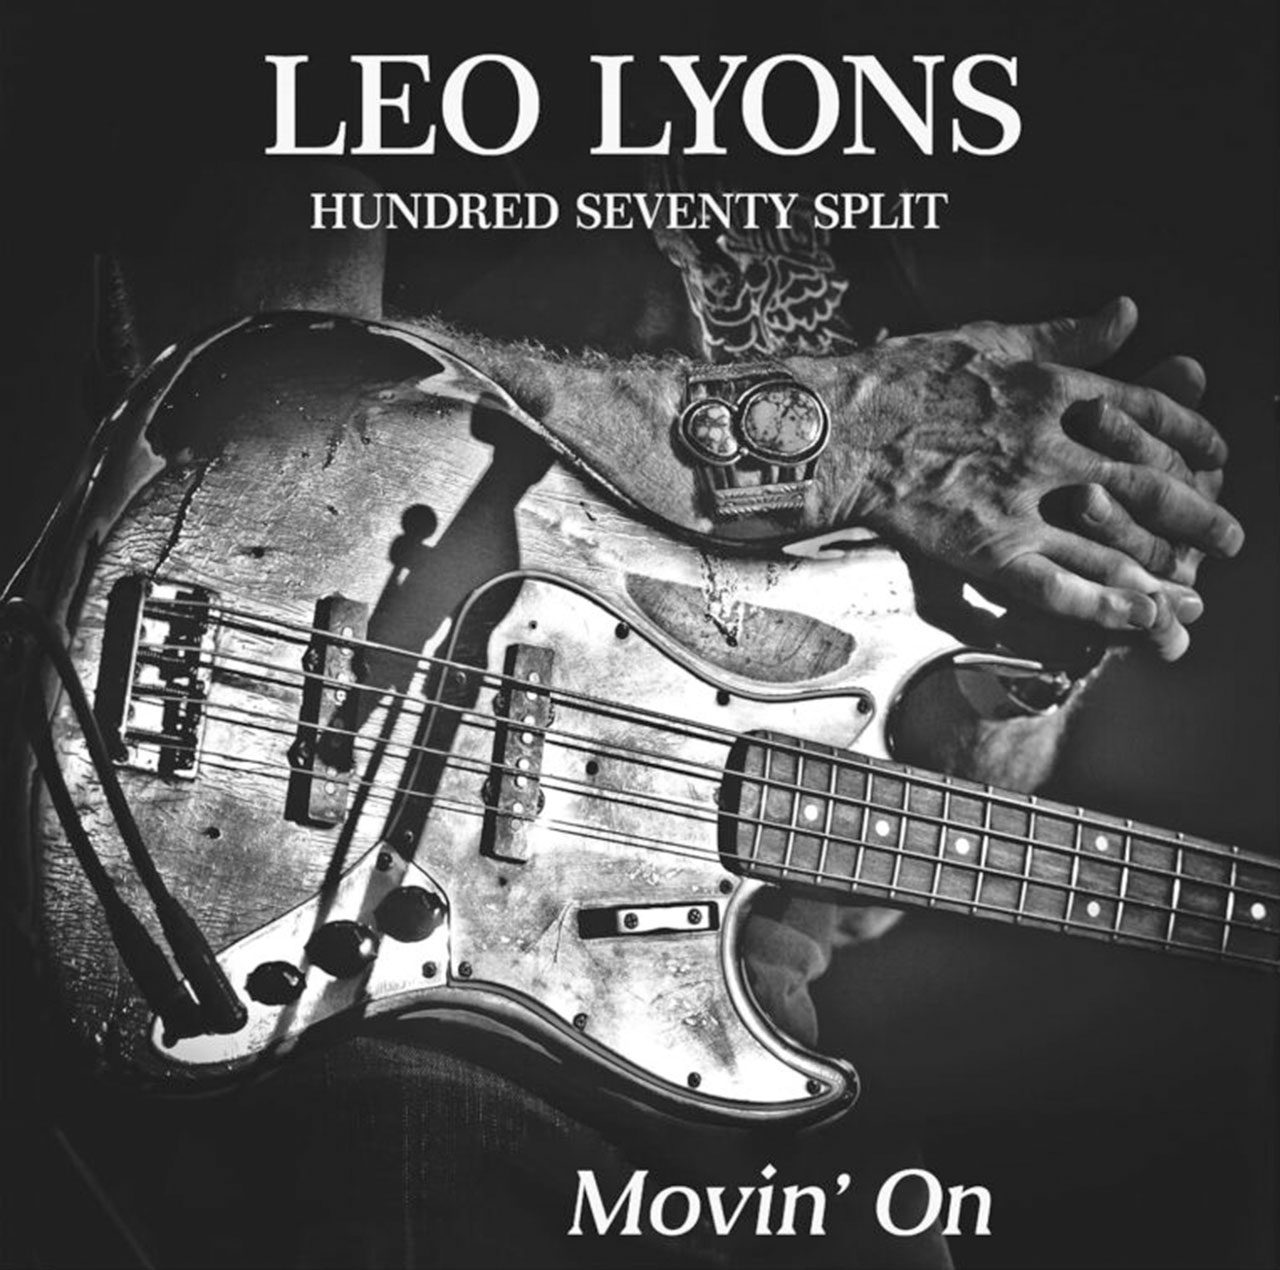 LEO LYONS HUNDRED SEVENTY SPLIT - Movin’ On cover album